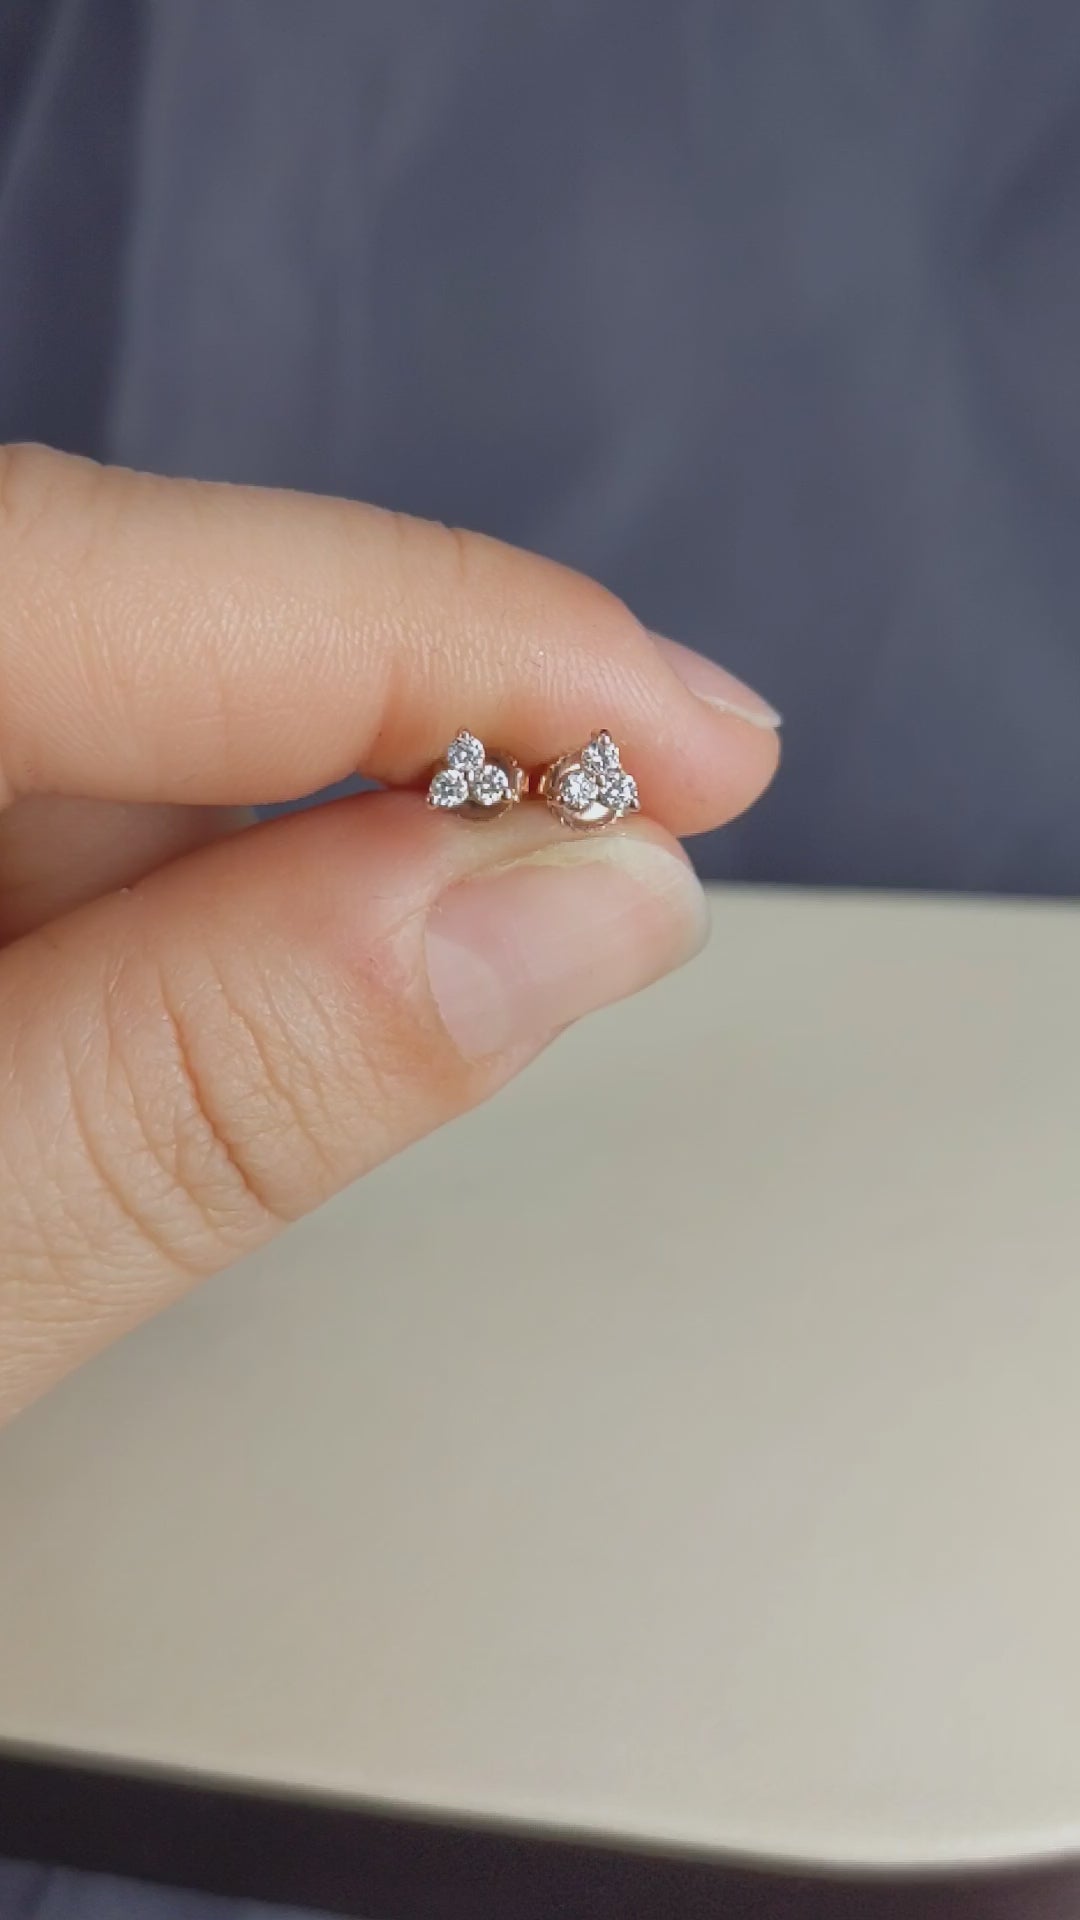 0.12 Carat Three Stone Diamond Stud Earrings